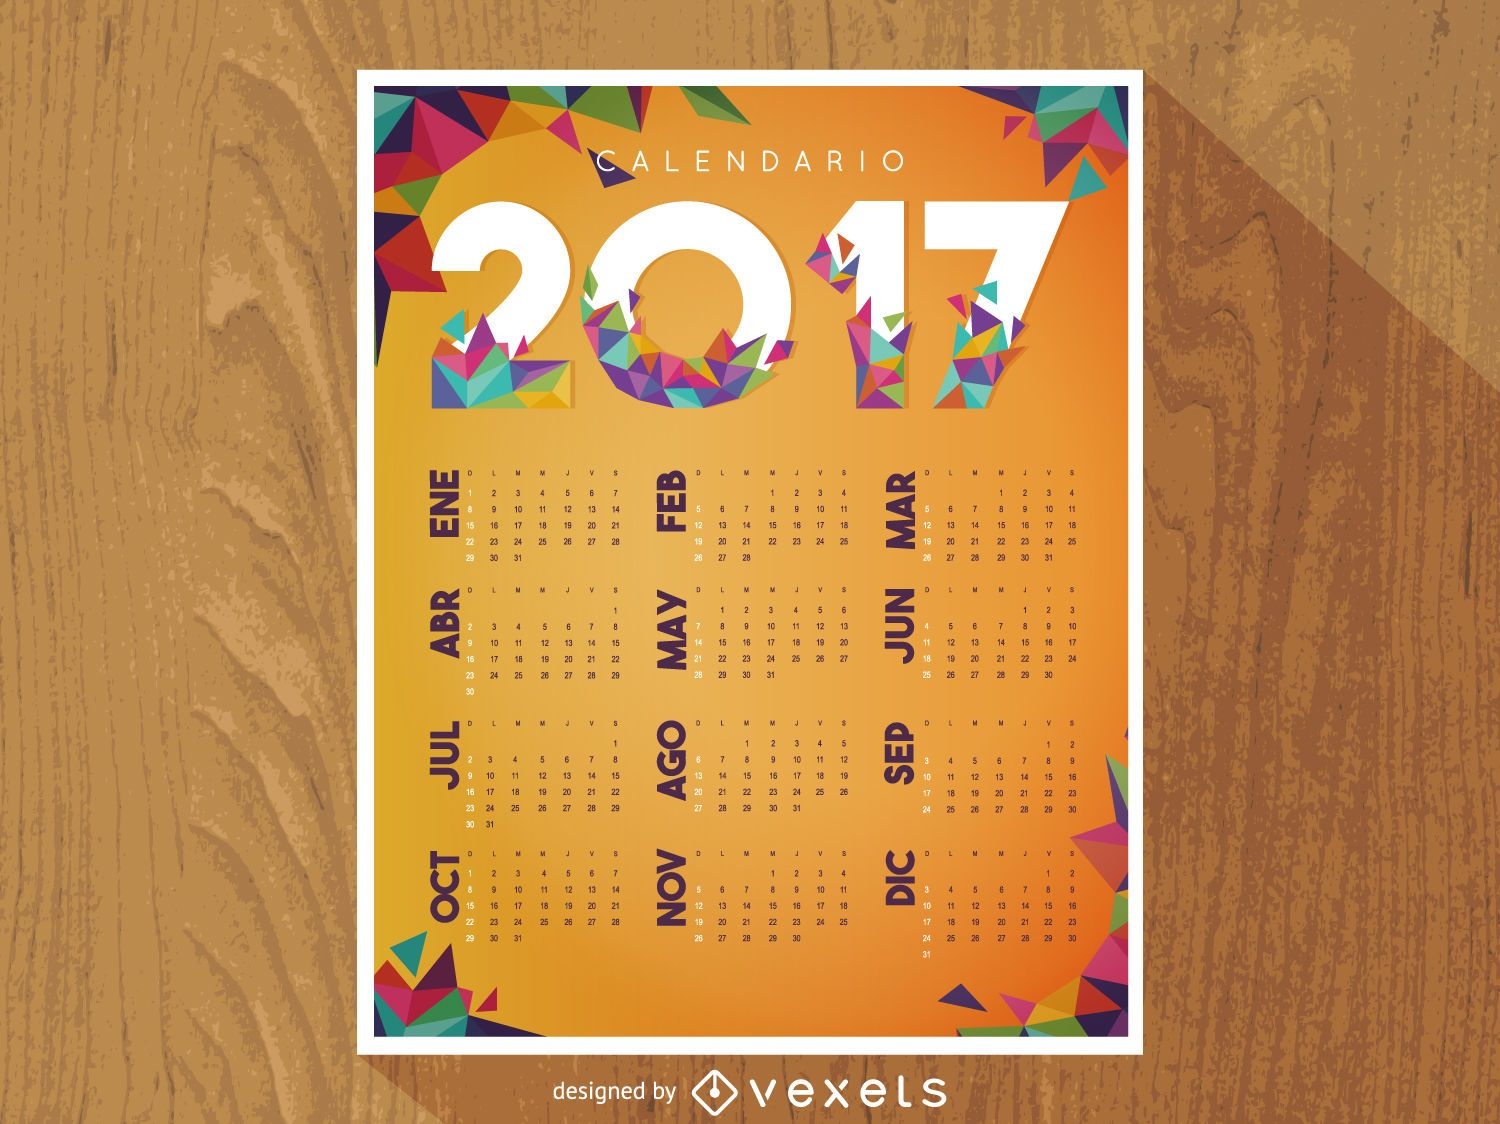 Calendario poligonal 2017 en español